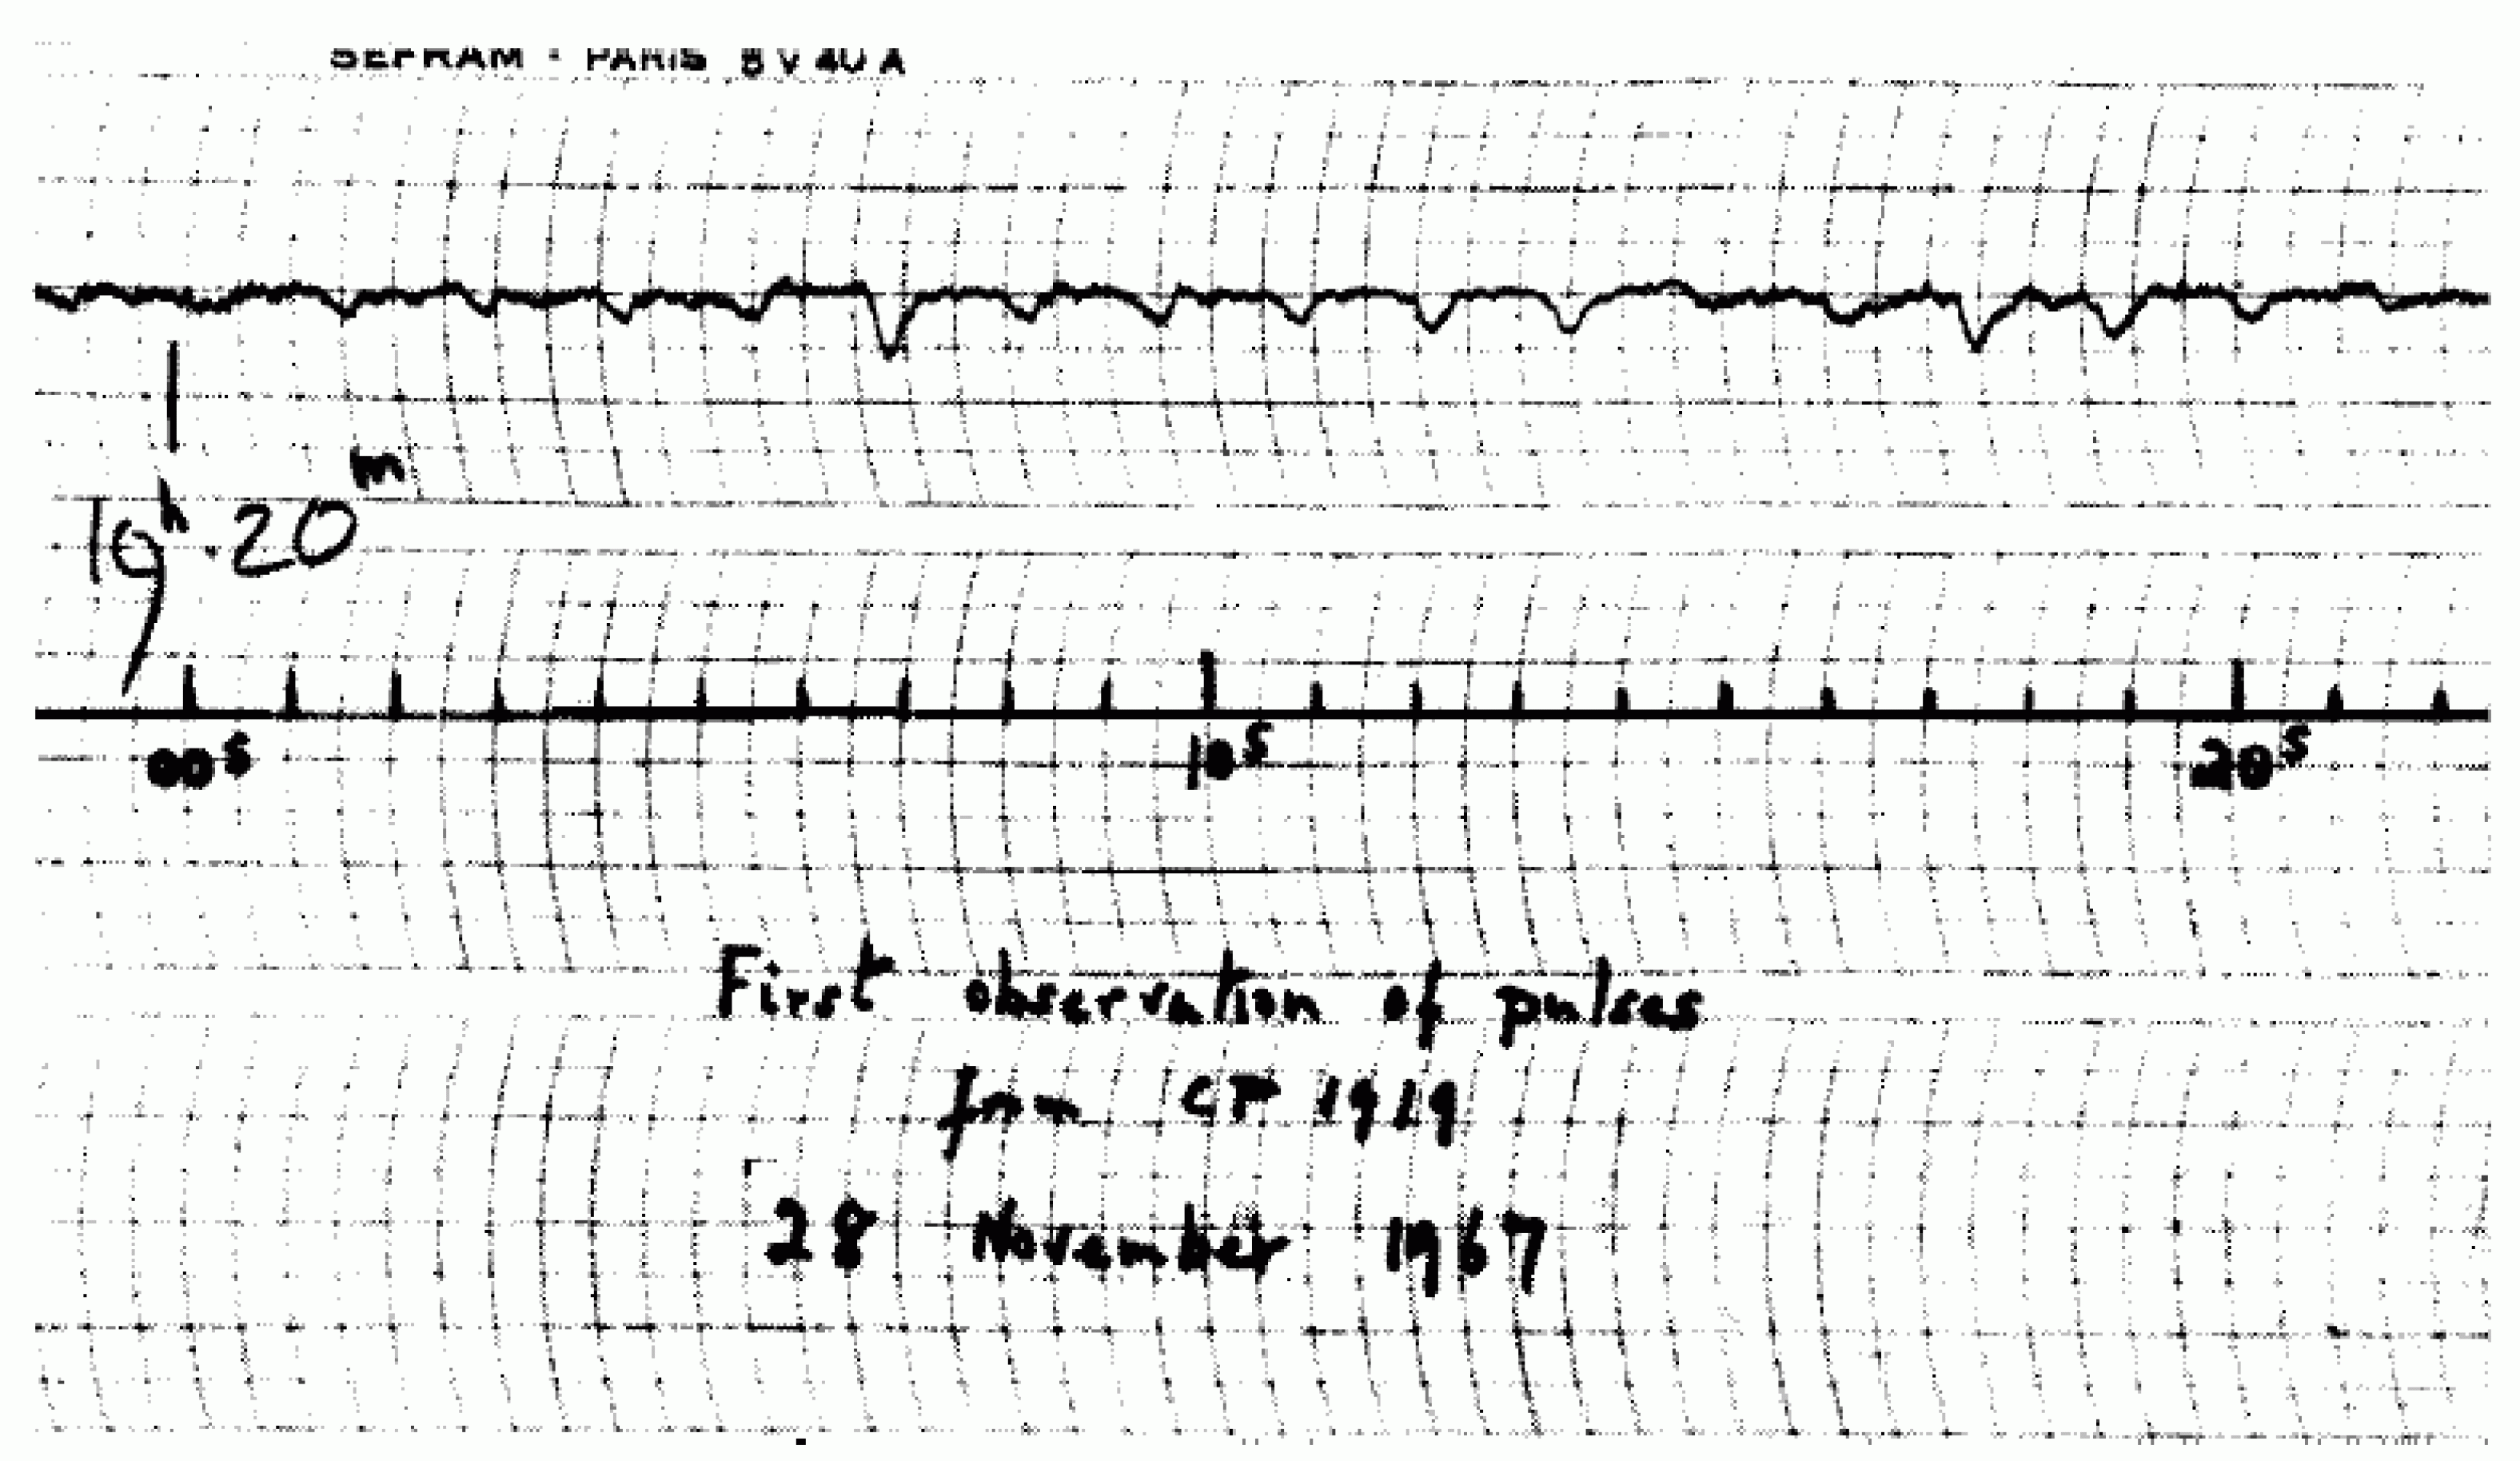 Das erste, zeitlich hochaufgelöste Signal eines Pulsars, aufgenommen von Jocelyn Bell am 28. November 1967. Mit dieser Aufzeichnung überzeugte sie ihren Chef!